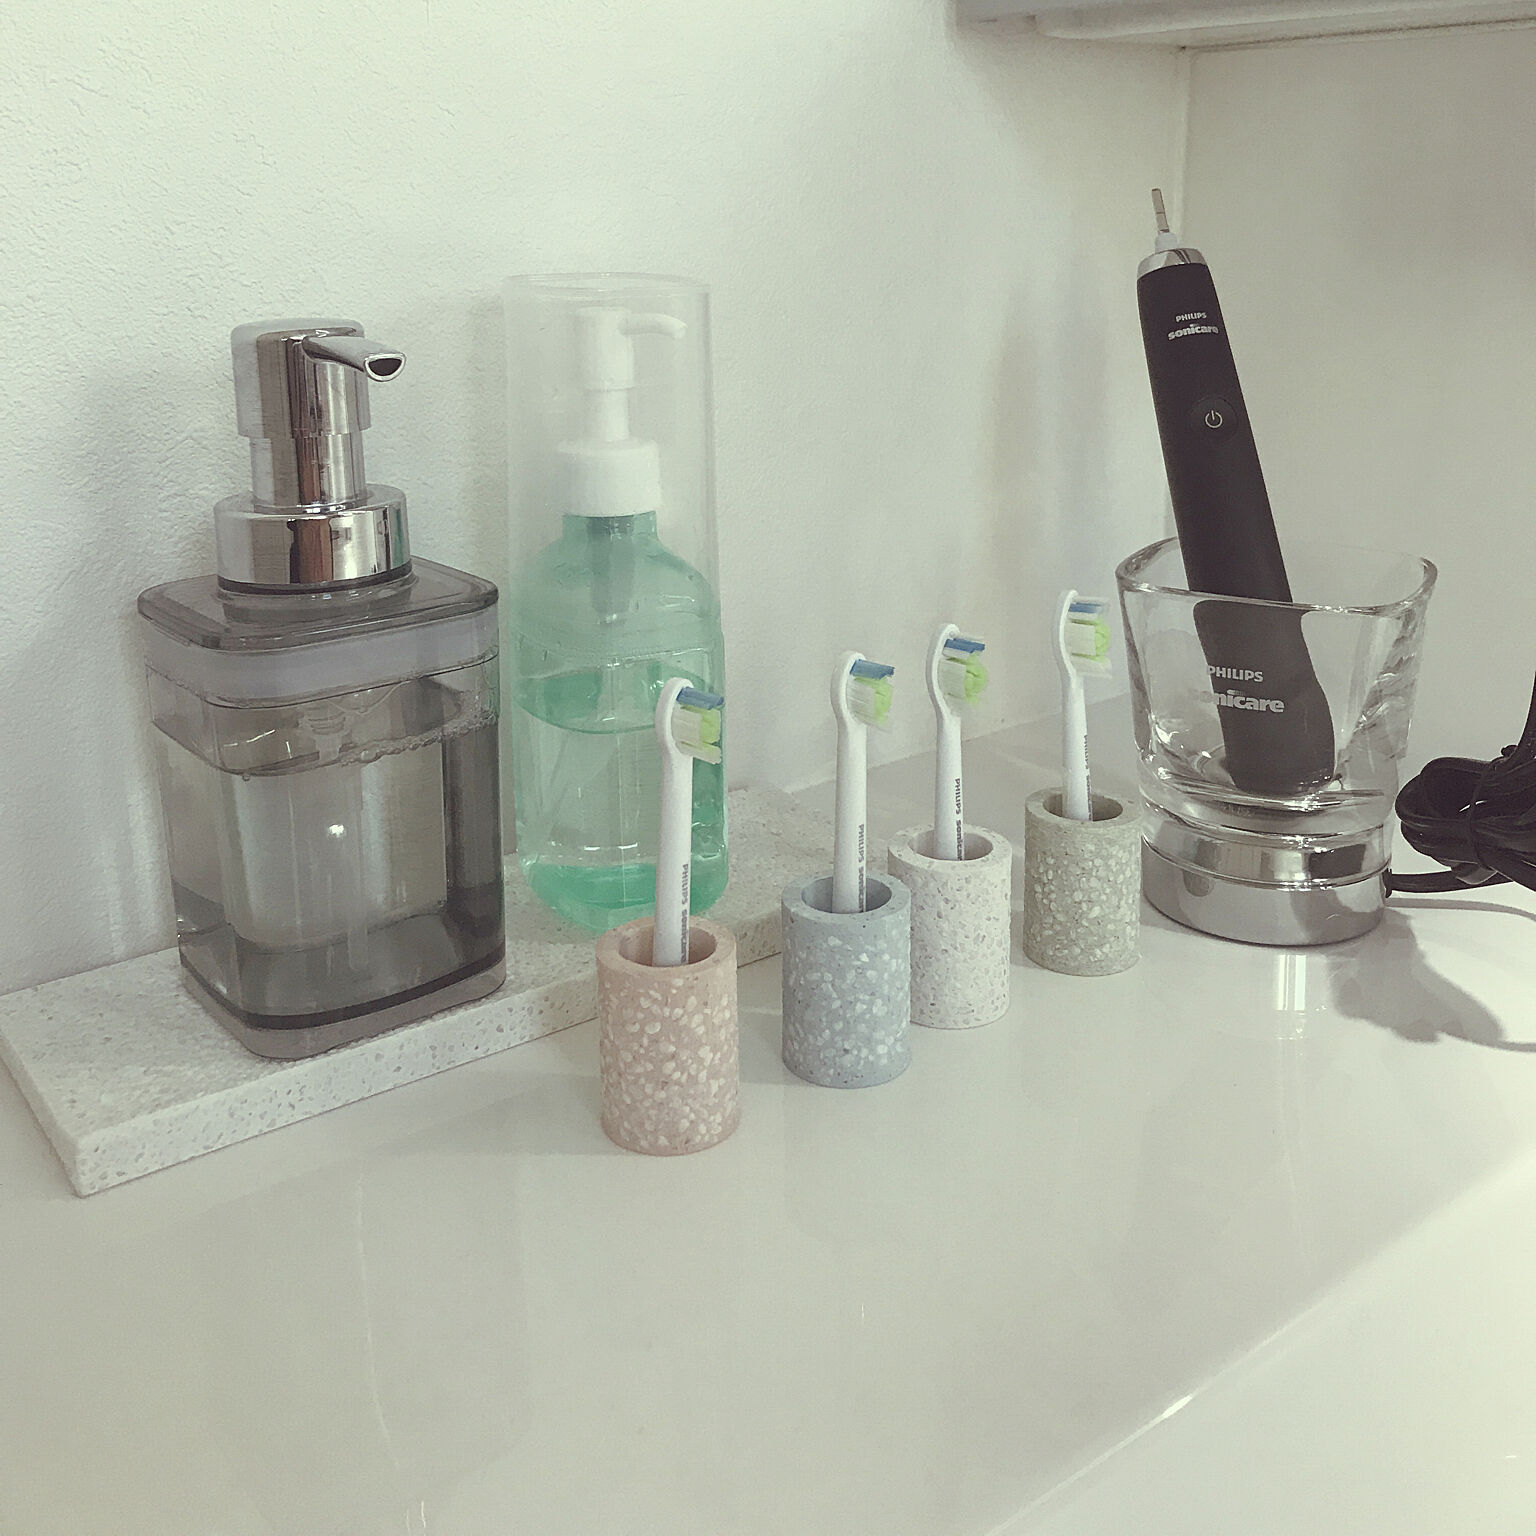 歯磨きアイテムをグレードアップ 洗練された洗面台に Roomclip Mag 暮らしとインテリアのwebマガジン